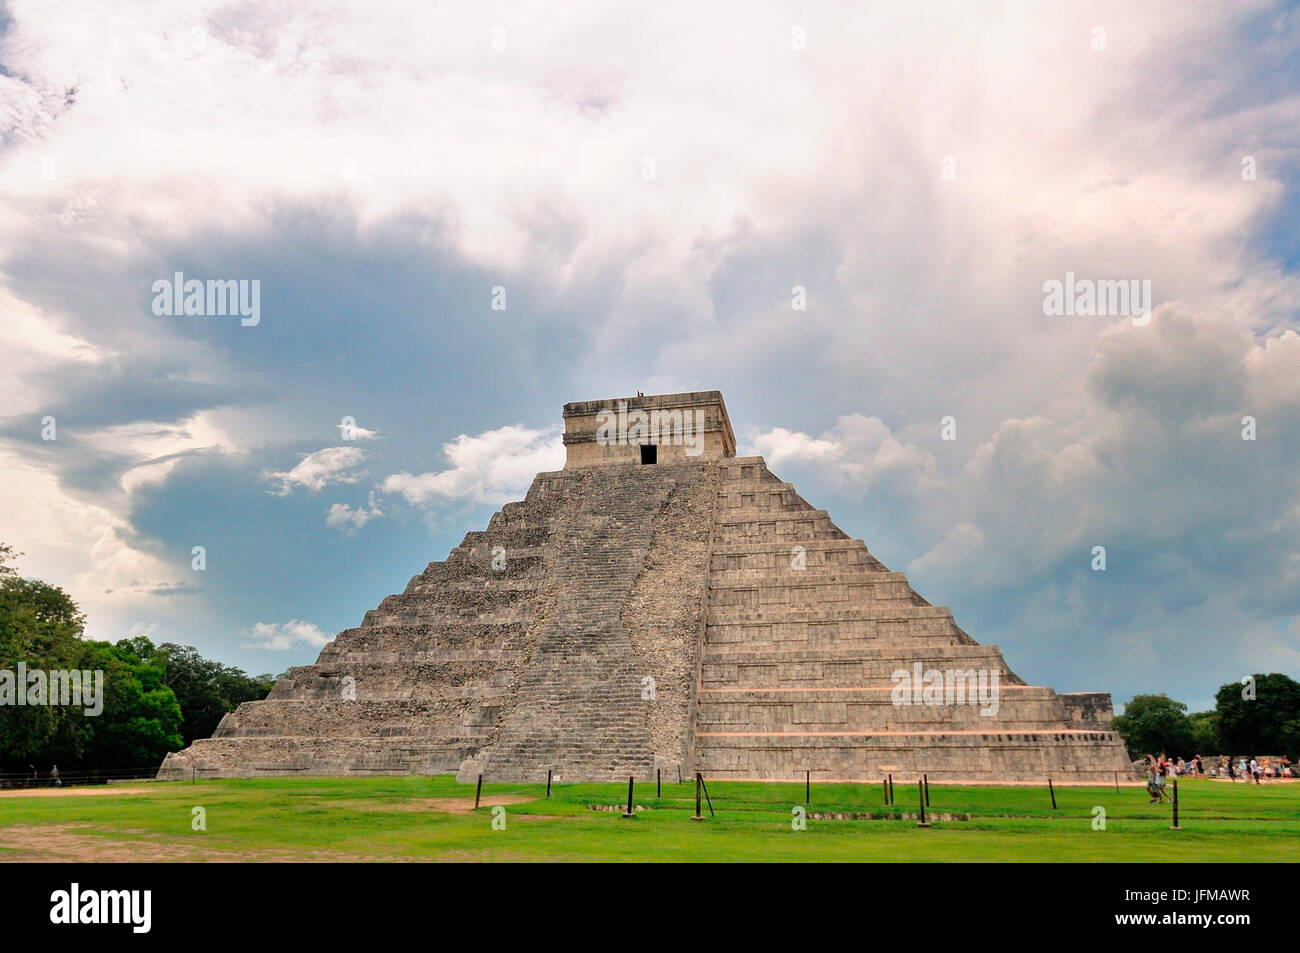 Pyramid of Kukulkan, Chichen Itza, Yucatan, Mexico Stock Photo